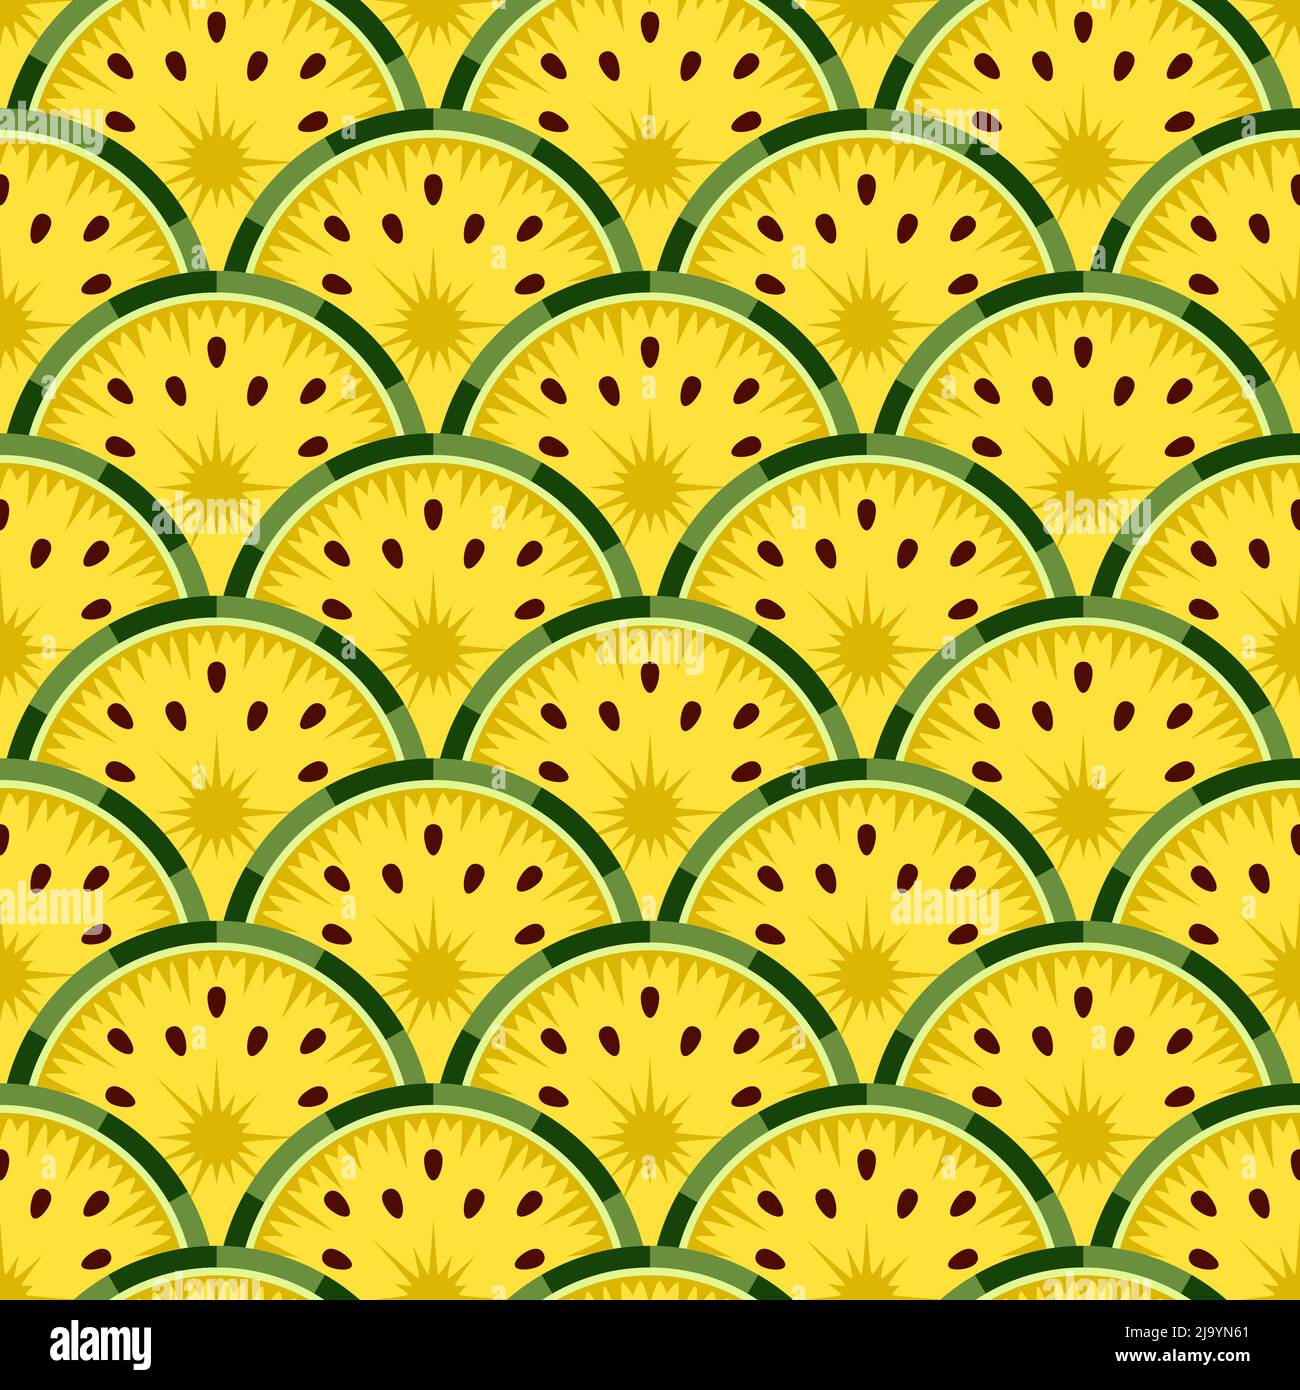 Nahtloses Muster mit geschnittener gelber Wassermelone. Vektor farbenfroher Hintergrund. Stock Vektor